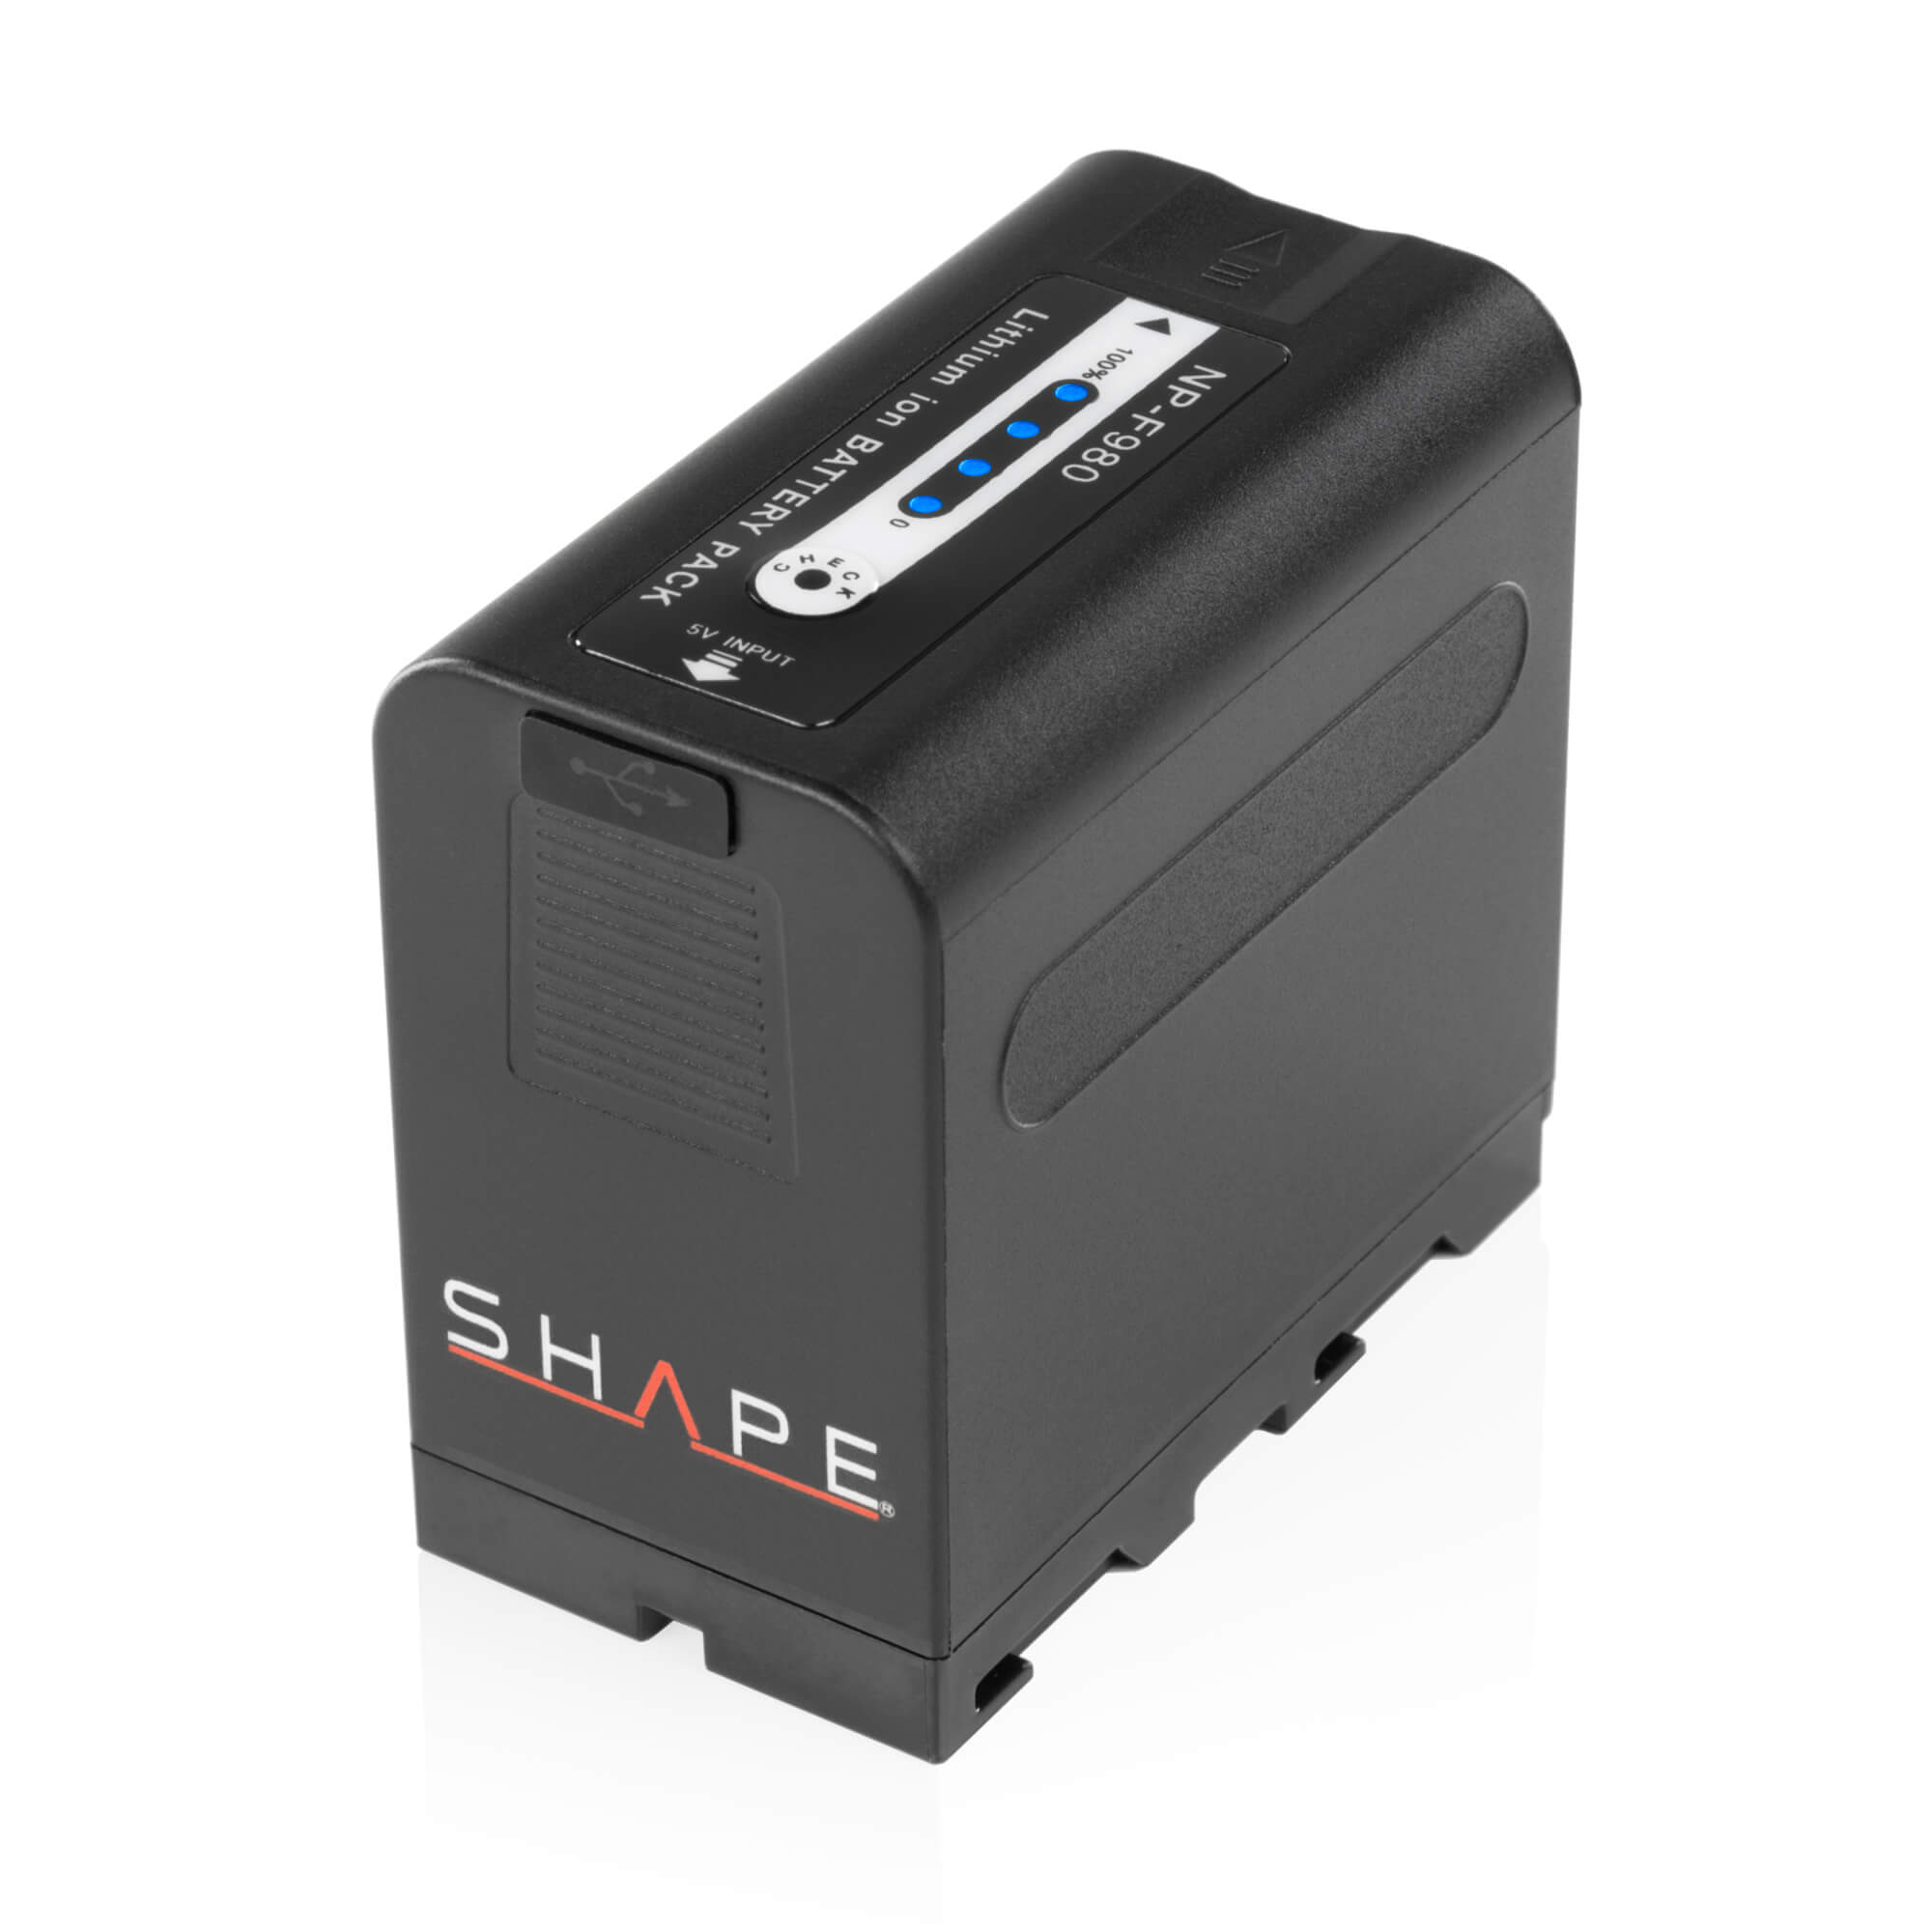 SHAPE NP-F980 Battery for Sony - SHAPE wlb